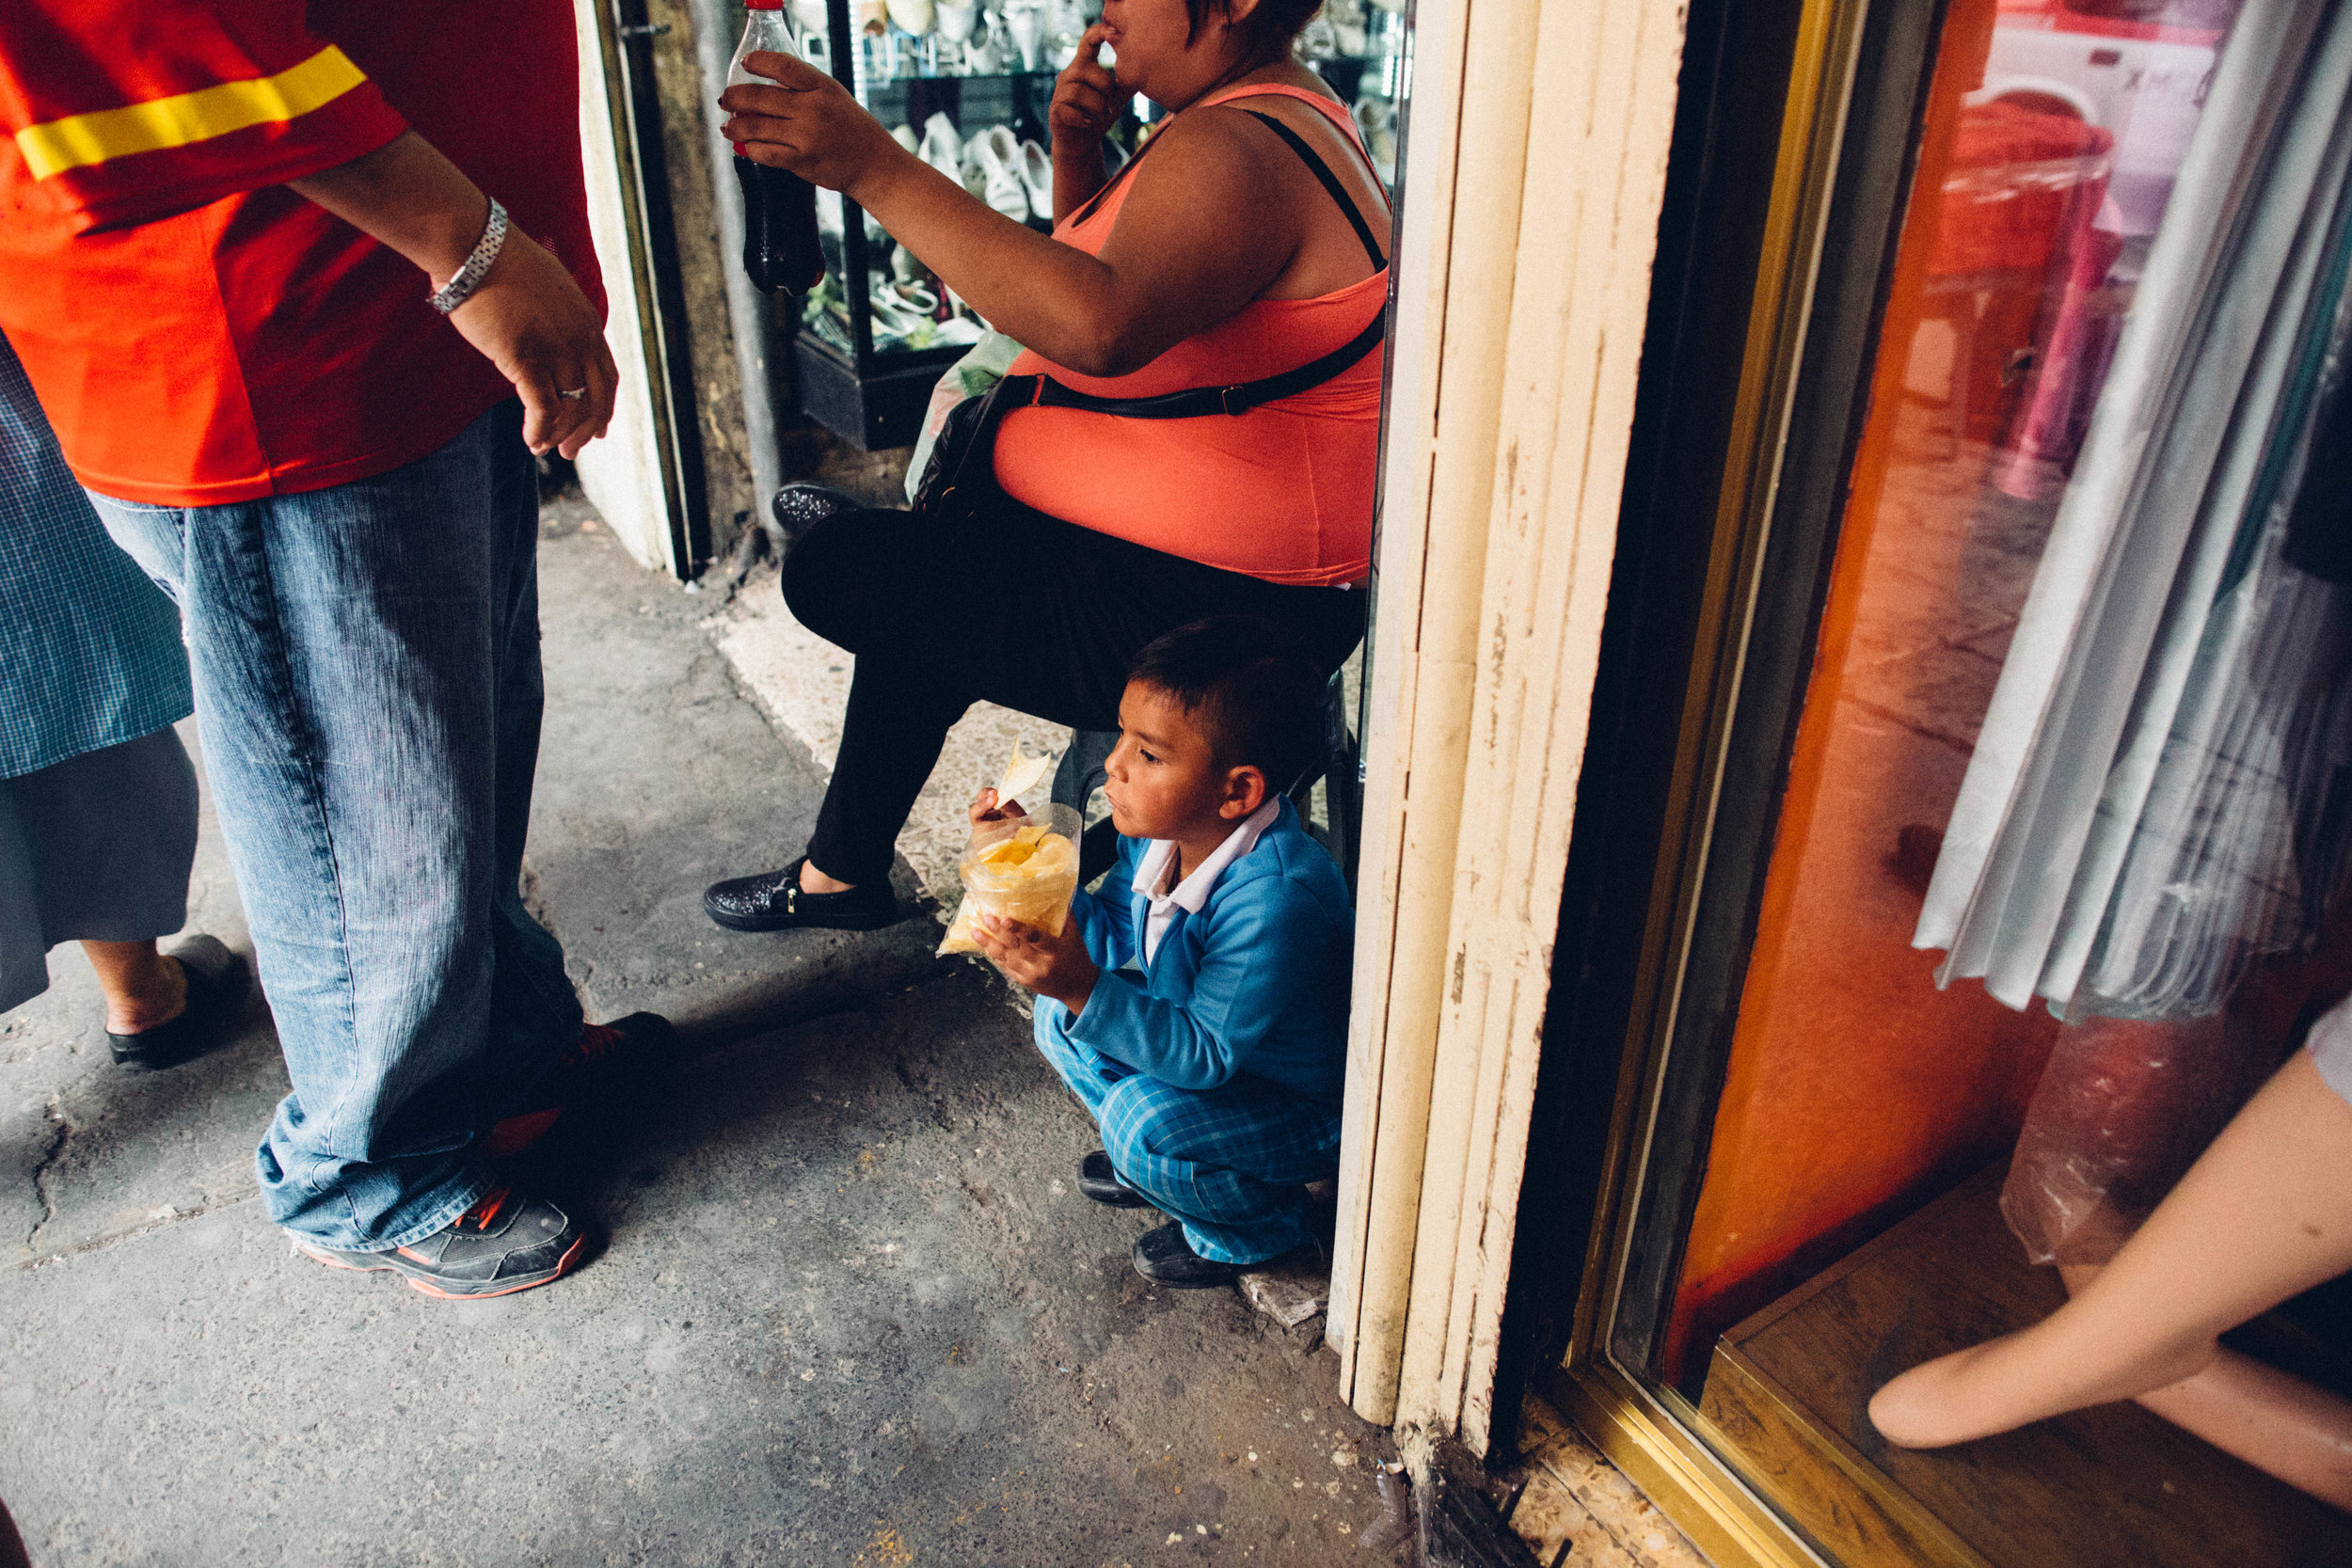   A young boy eats a snack near La Lagunilla market. Mexico City, Mexico.  